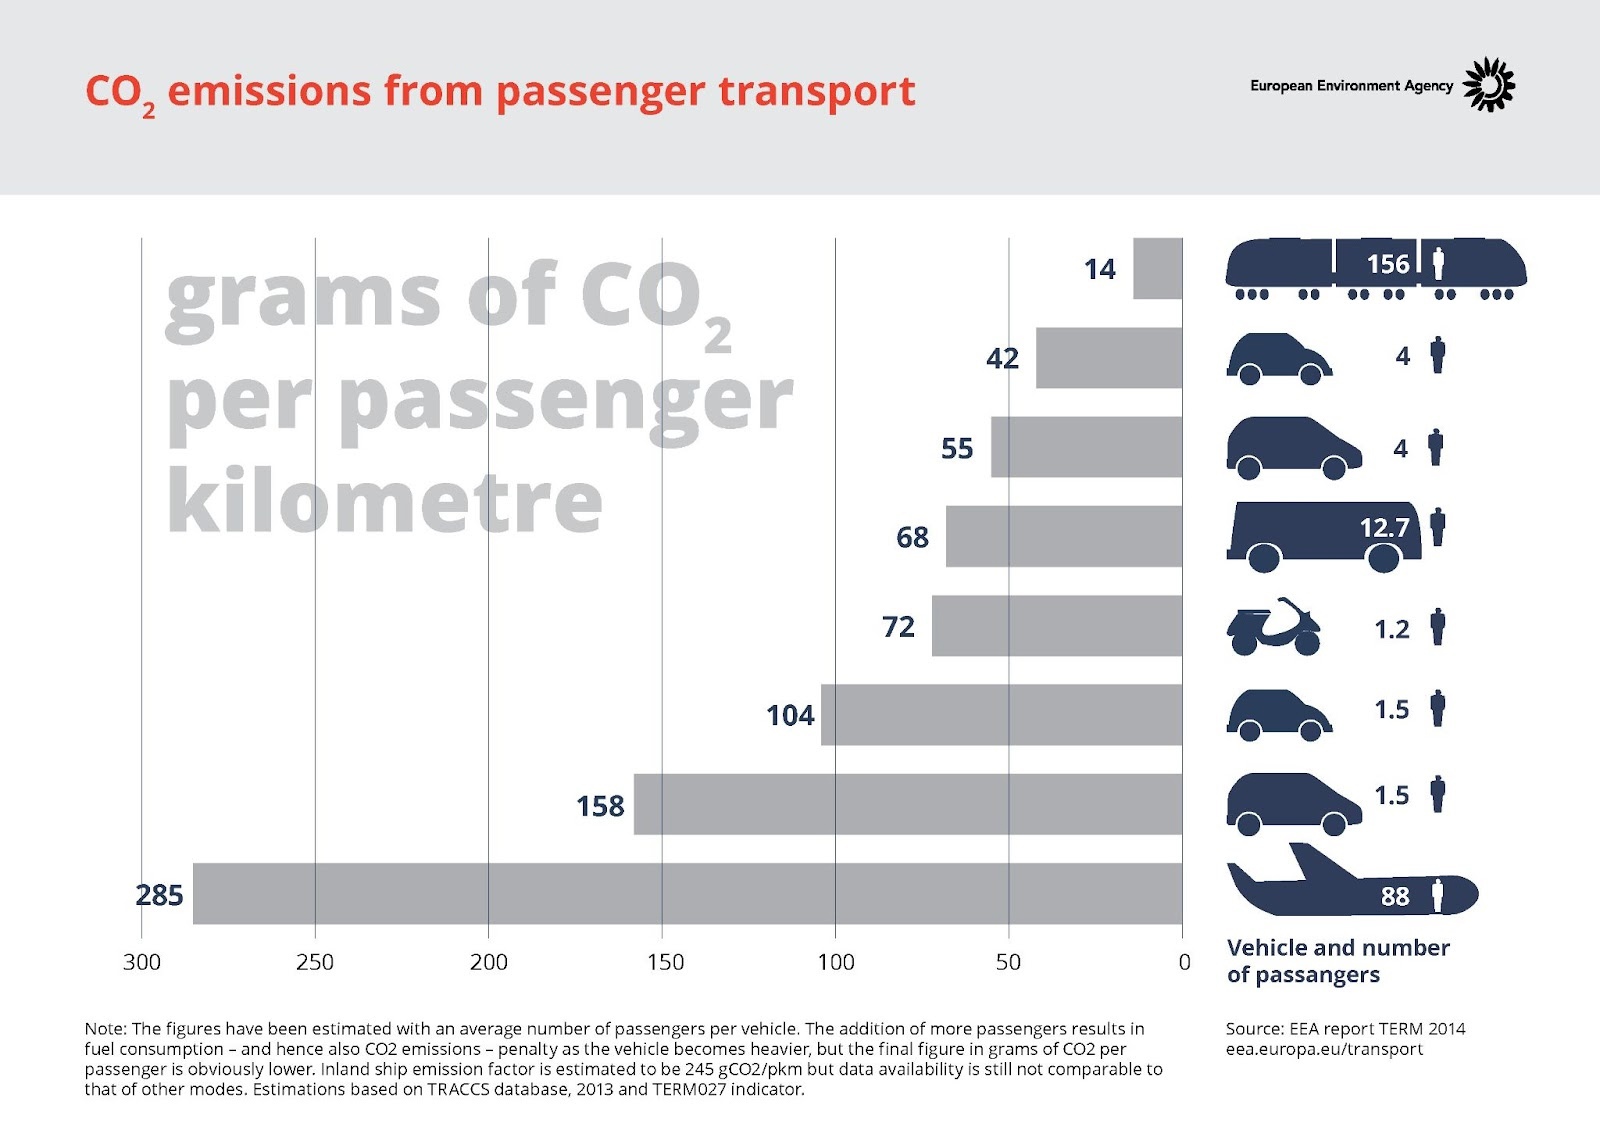 Наименее негативный для экологии способ передвижения &mdash; поезд: 14 гр парниковых выбросов на пассажира. Наиболее негативное влияние от автомобиля и самолета &mdash; 158 и 258 гр на одного пассажира соответственно.